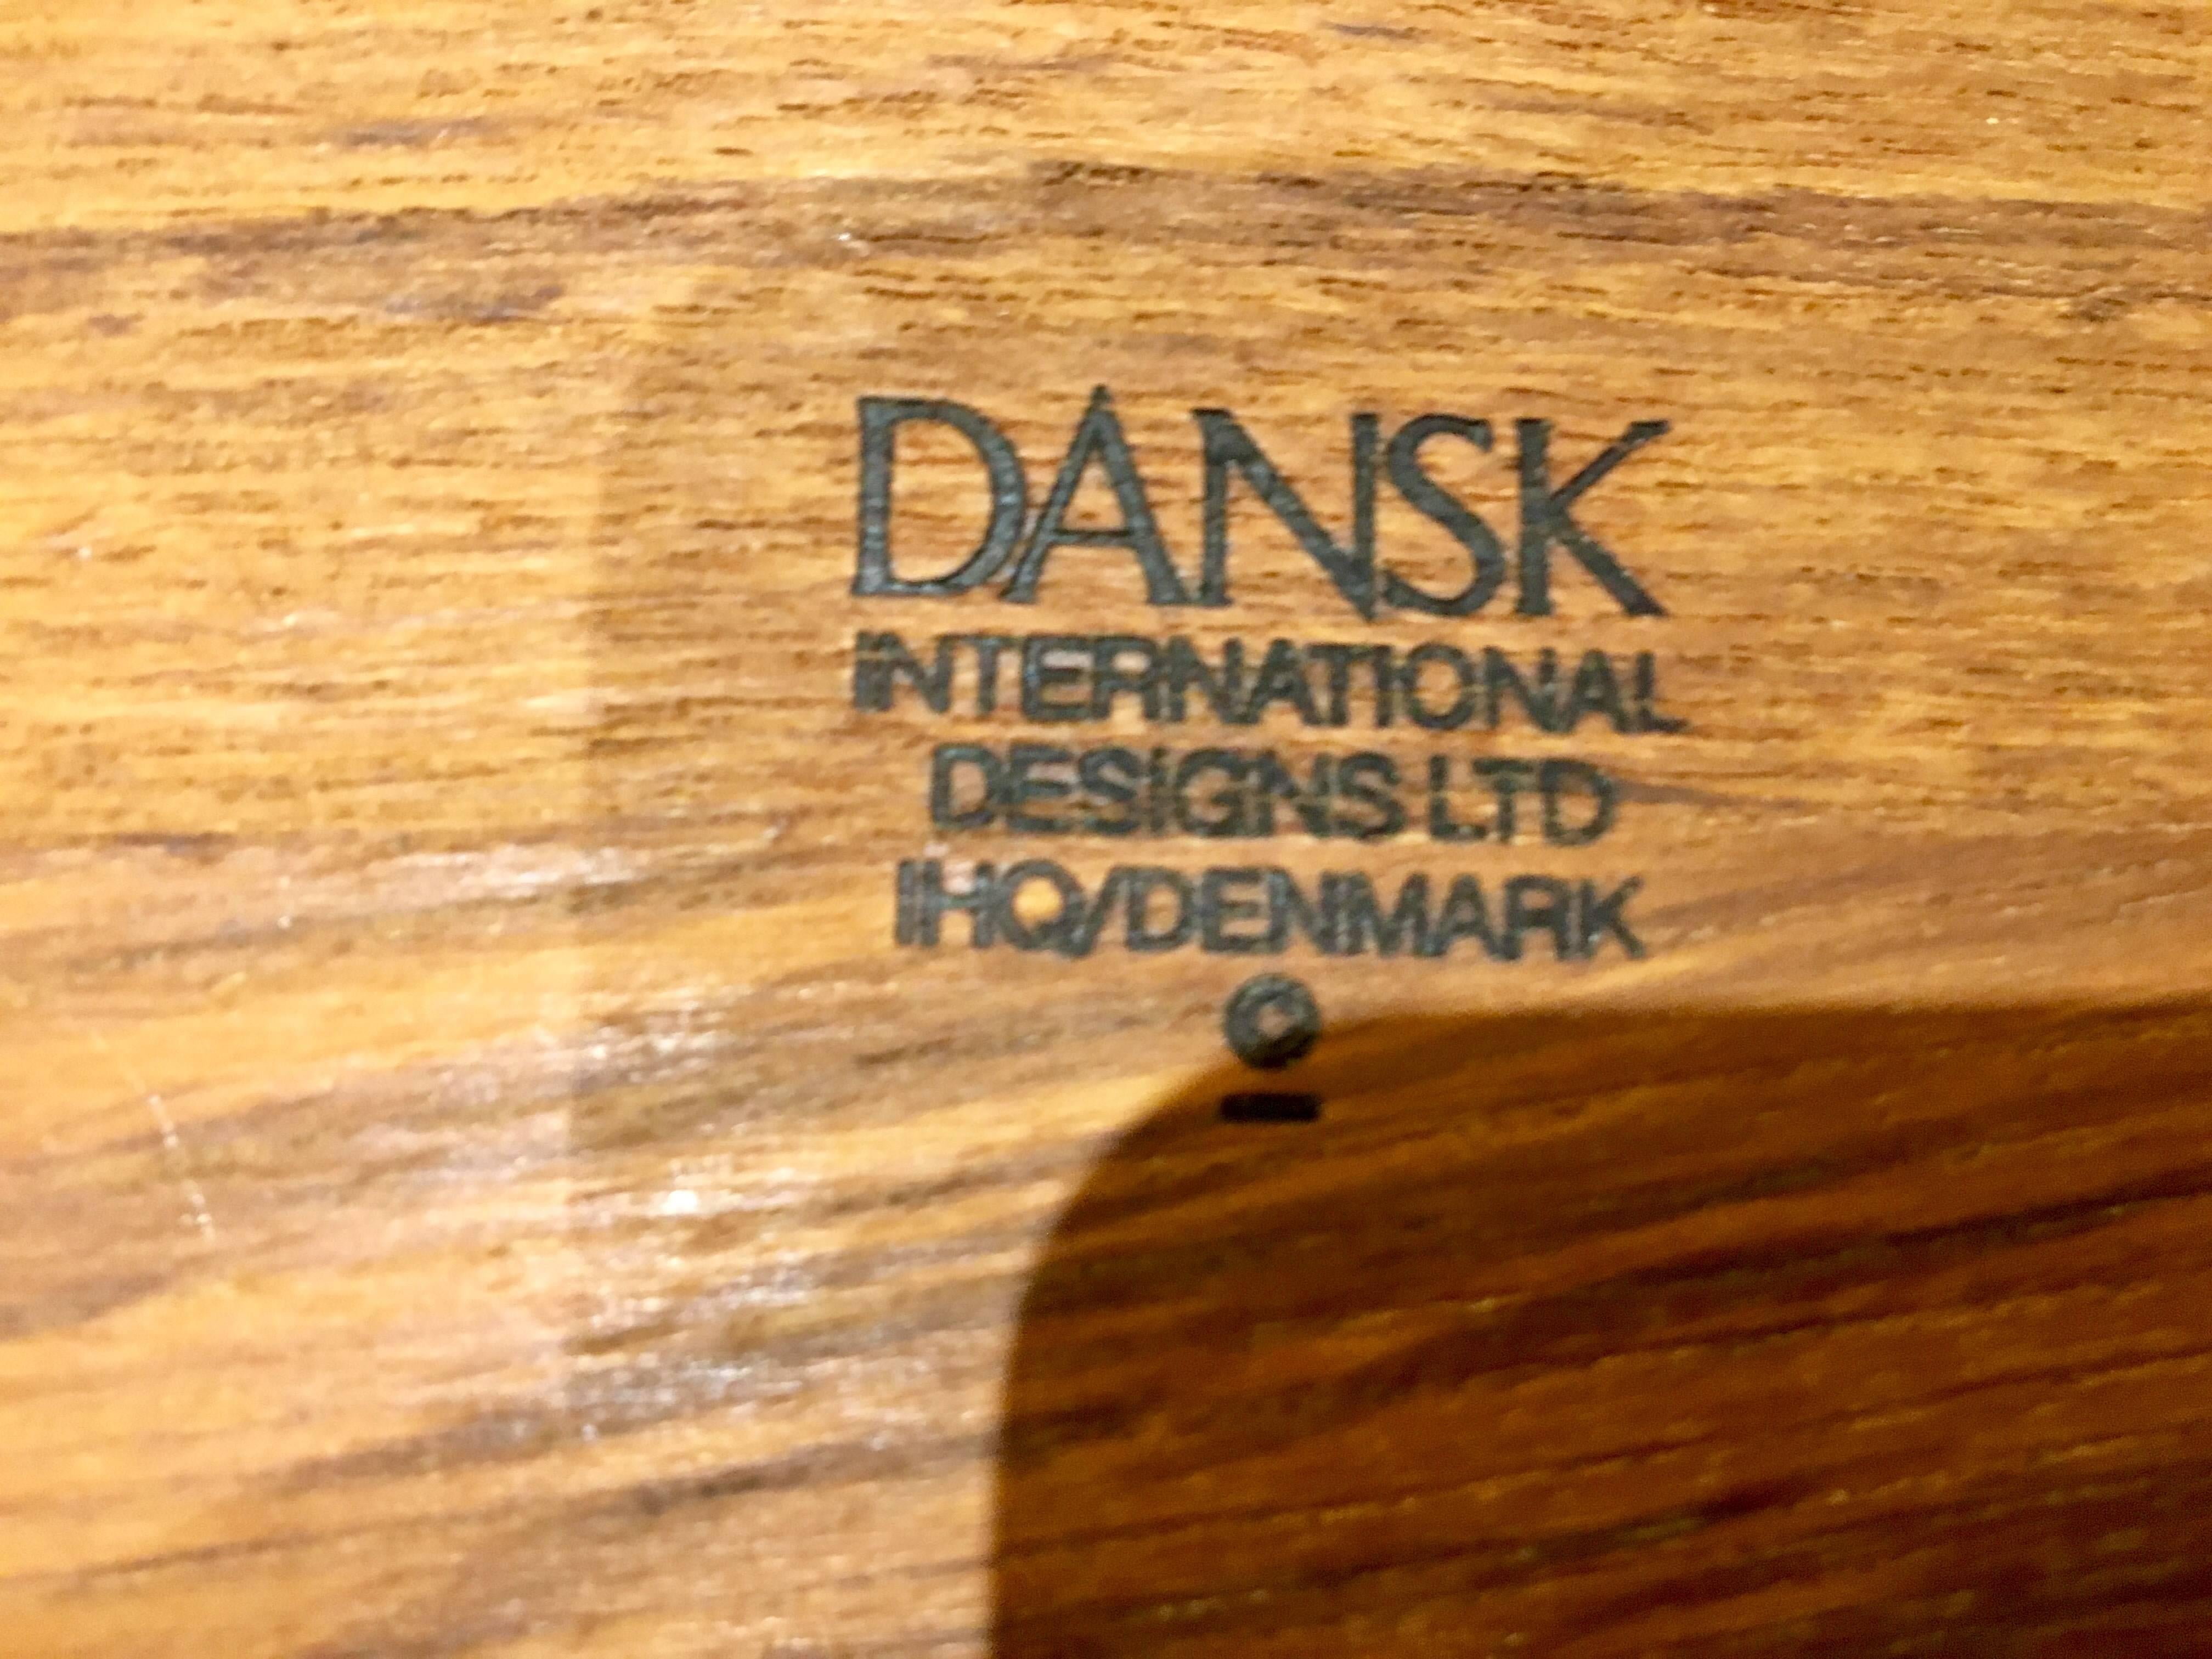 dansk tray